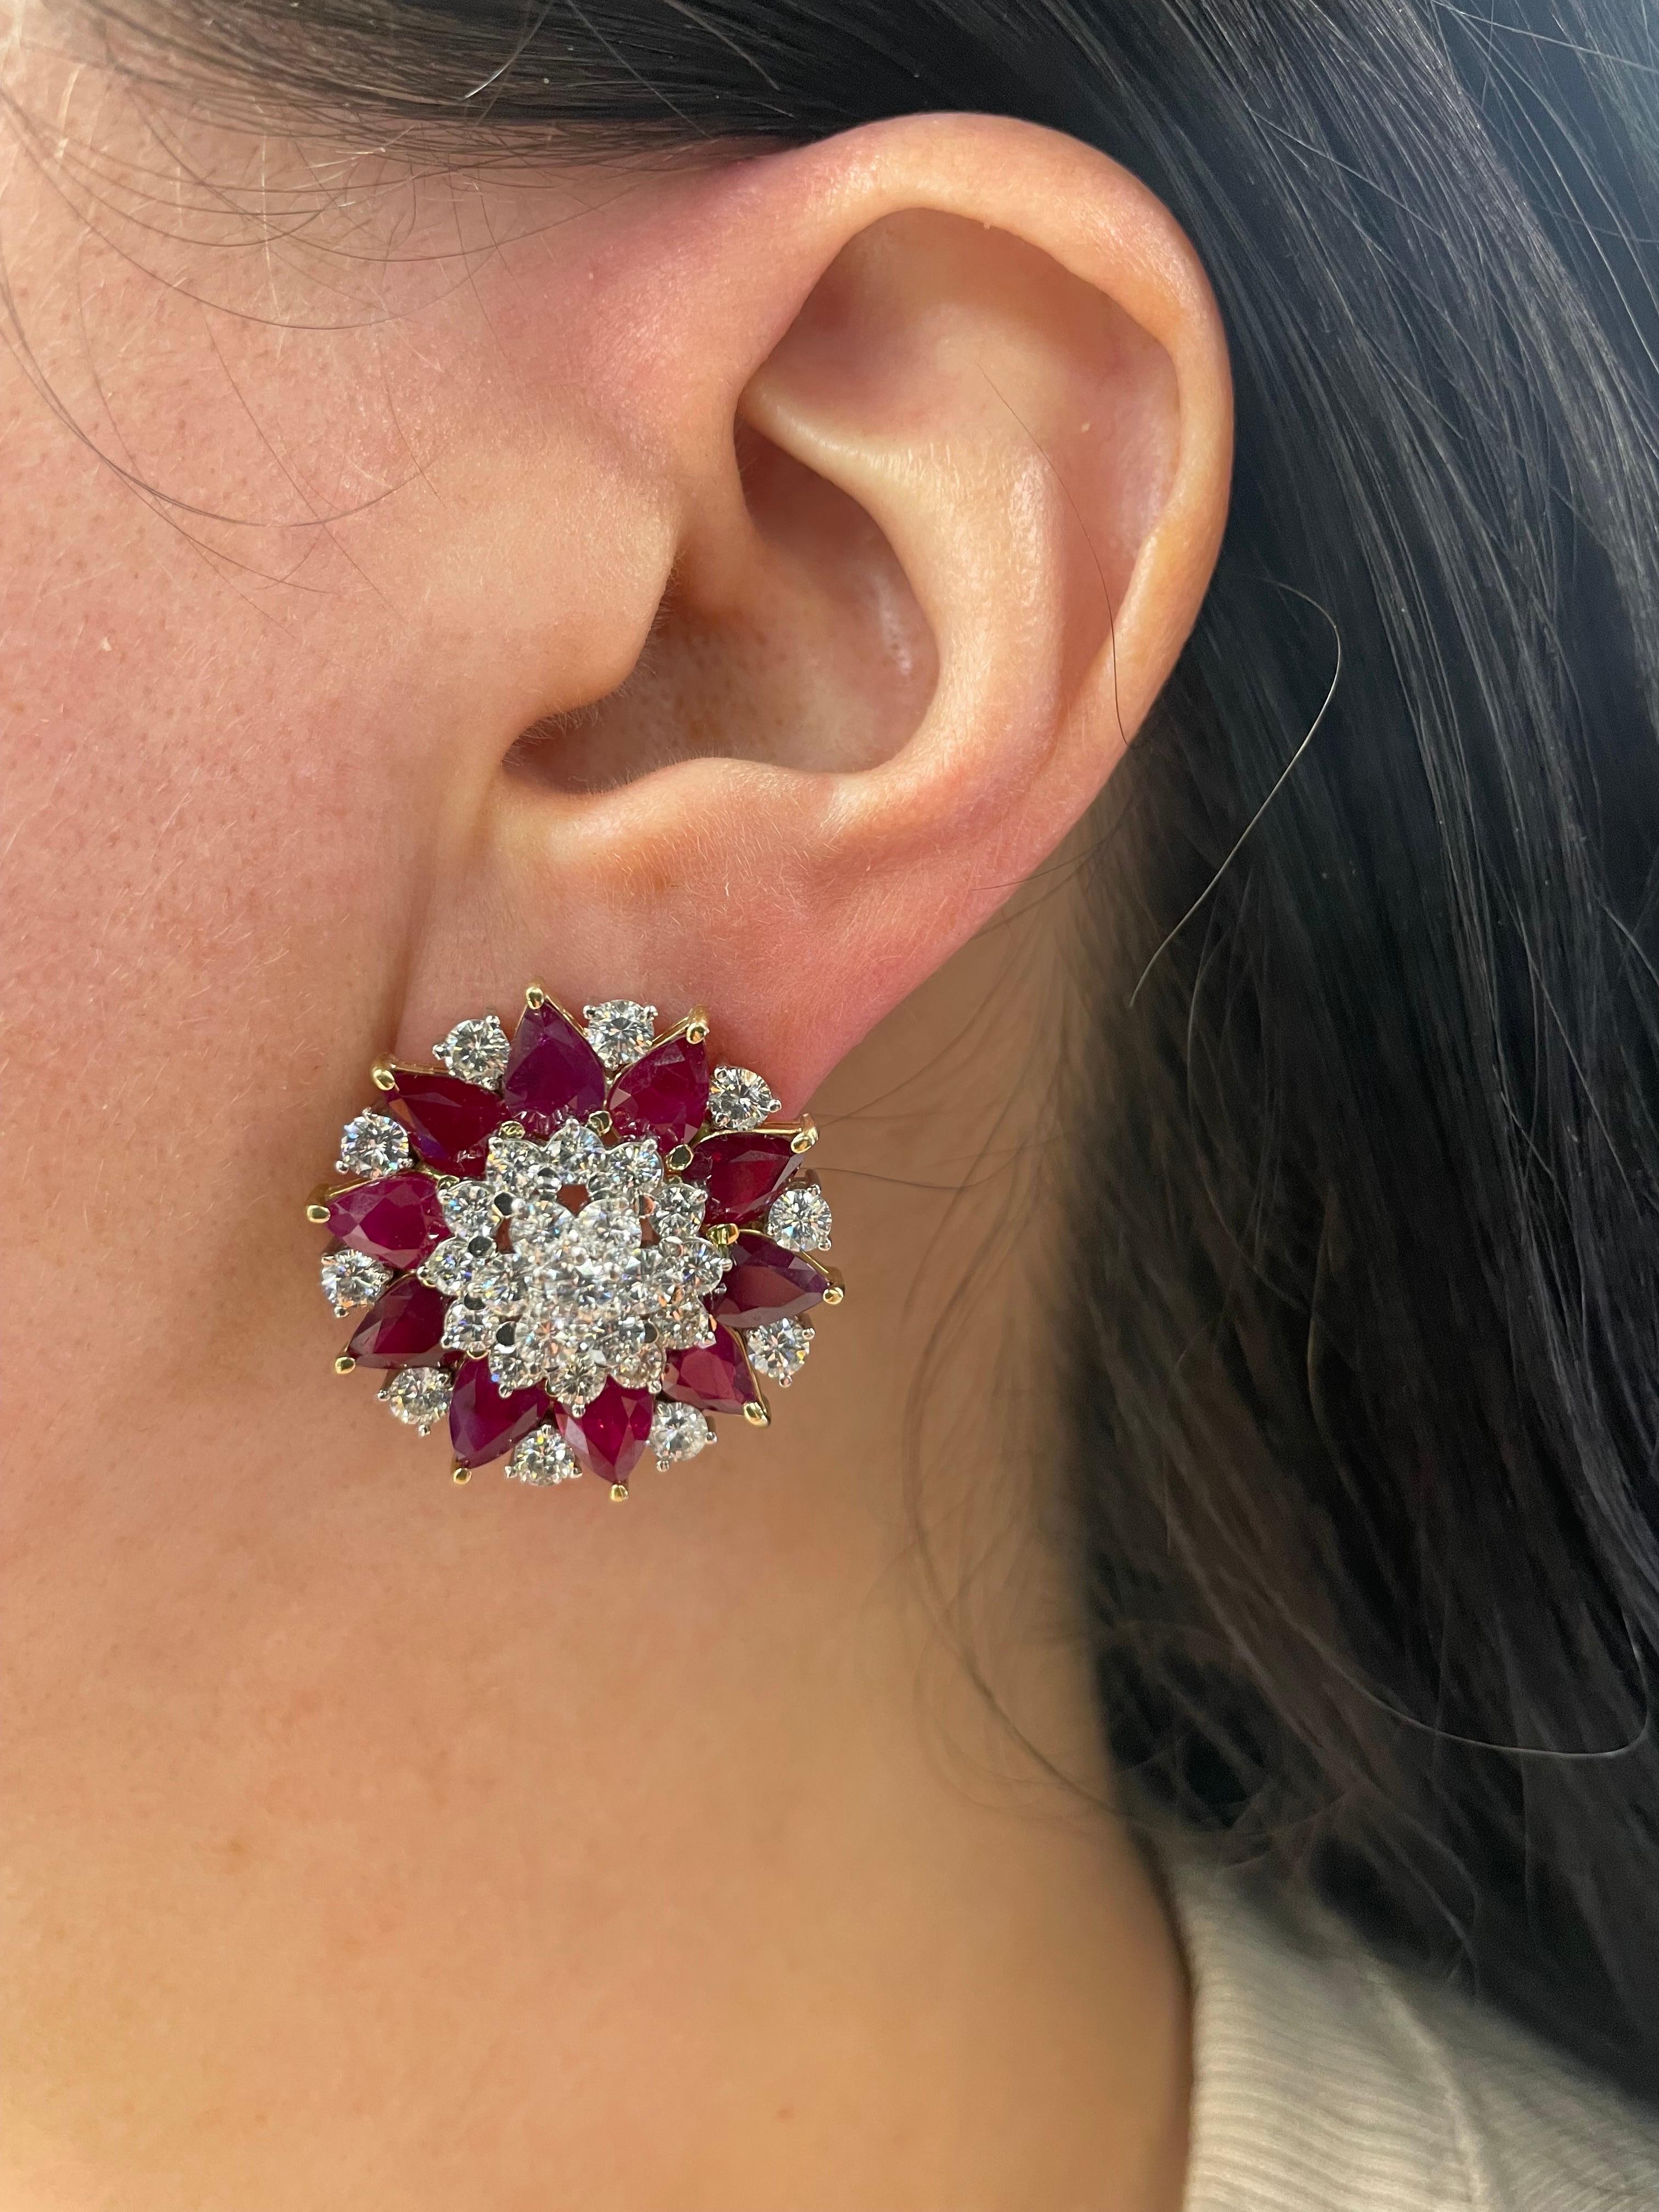 Contemporary C. DUNAIGRE Burma Ruby Heated Diamond Cluster Star Earrings 28 CTTW  For Sale